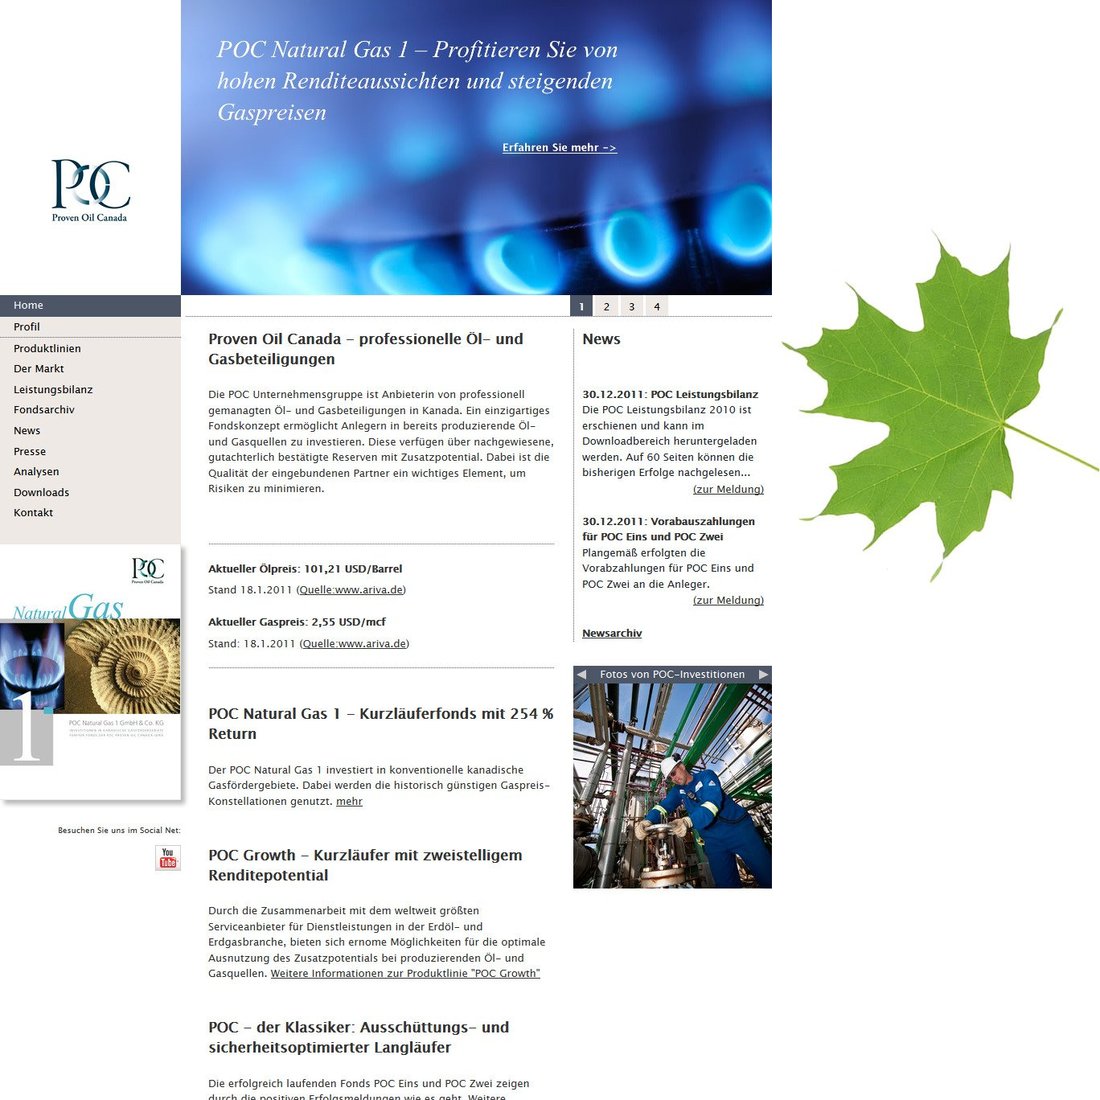 Abbildung Webdesign Startseite der POC GmbH